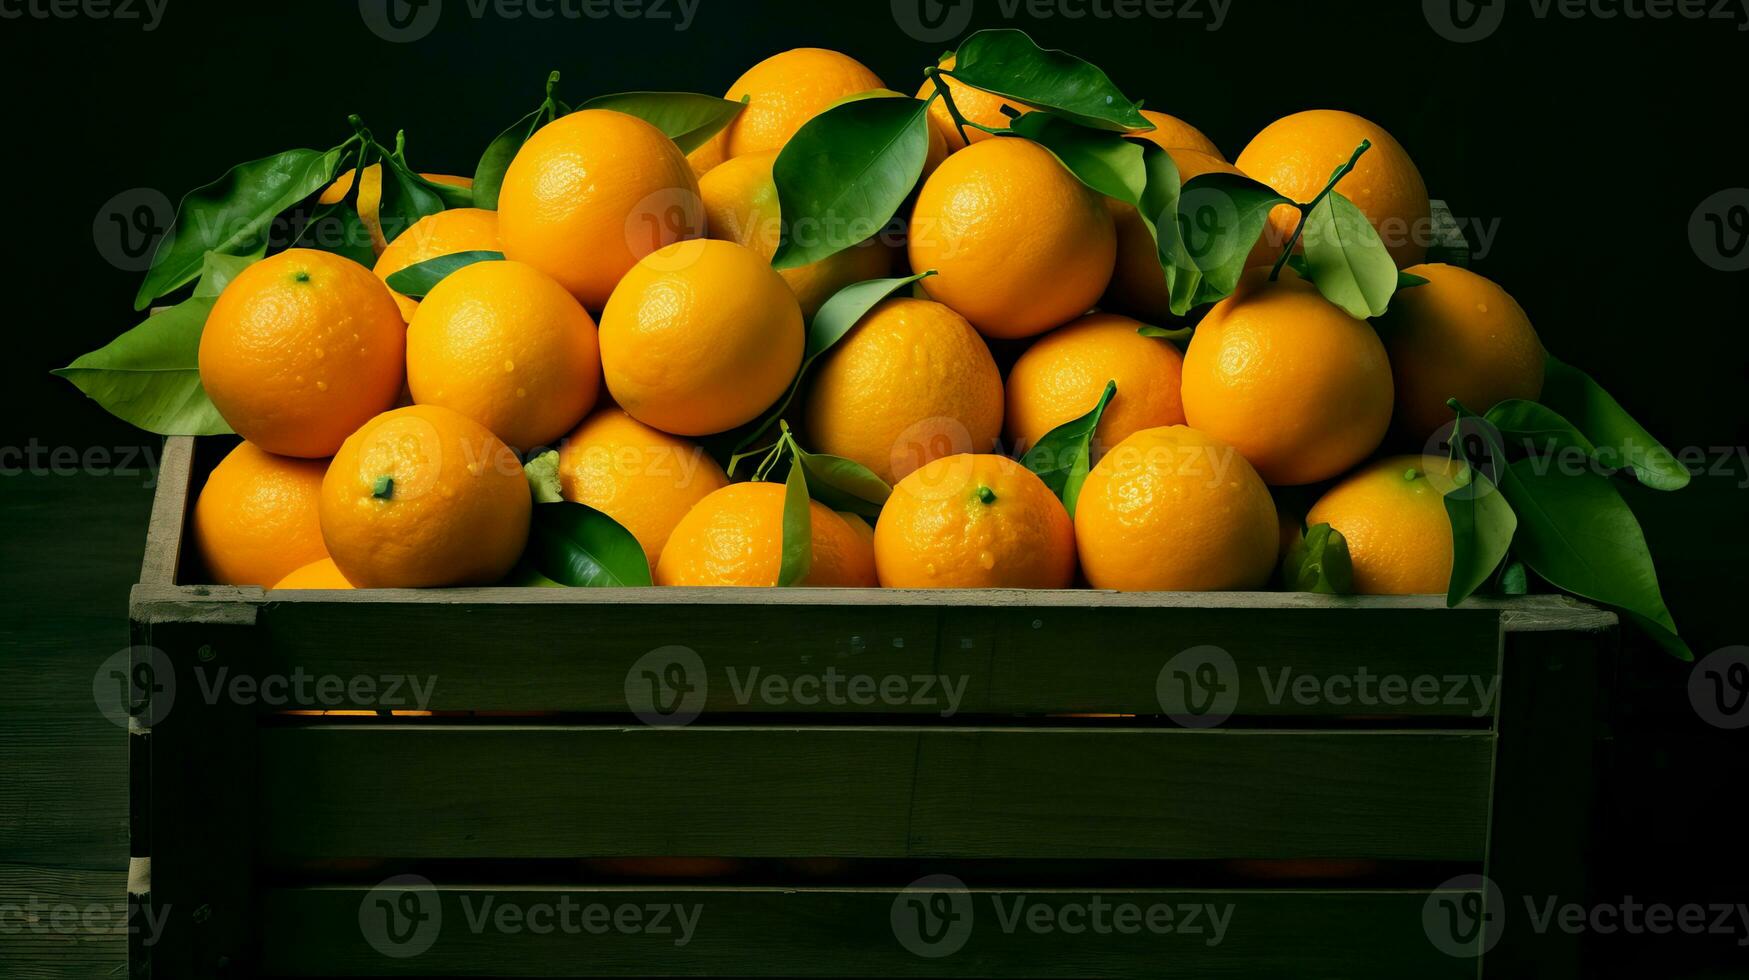 boîte avec des oranges sur une noir Contexte. en bonne santé nourriture, vitamine c, super aliment. photo